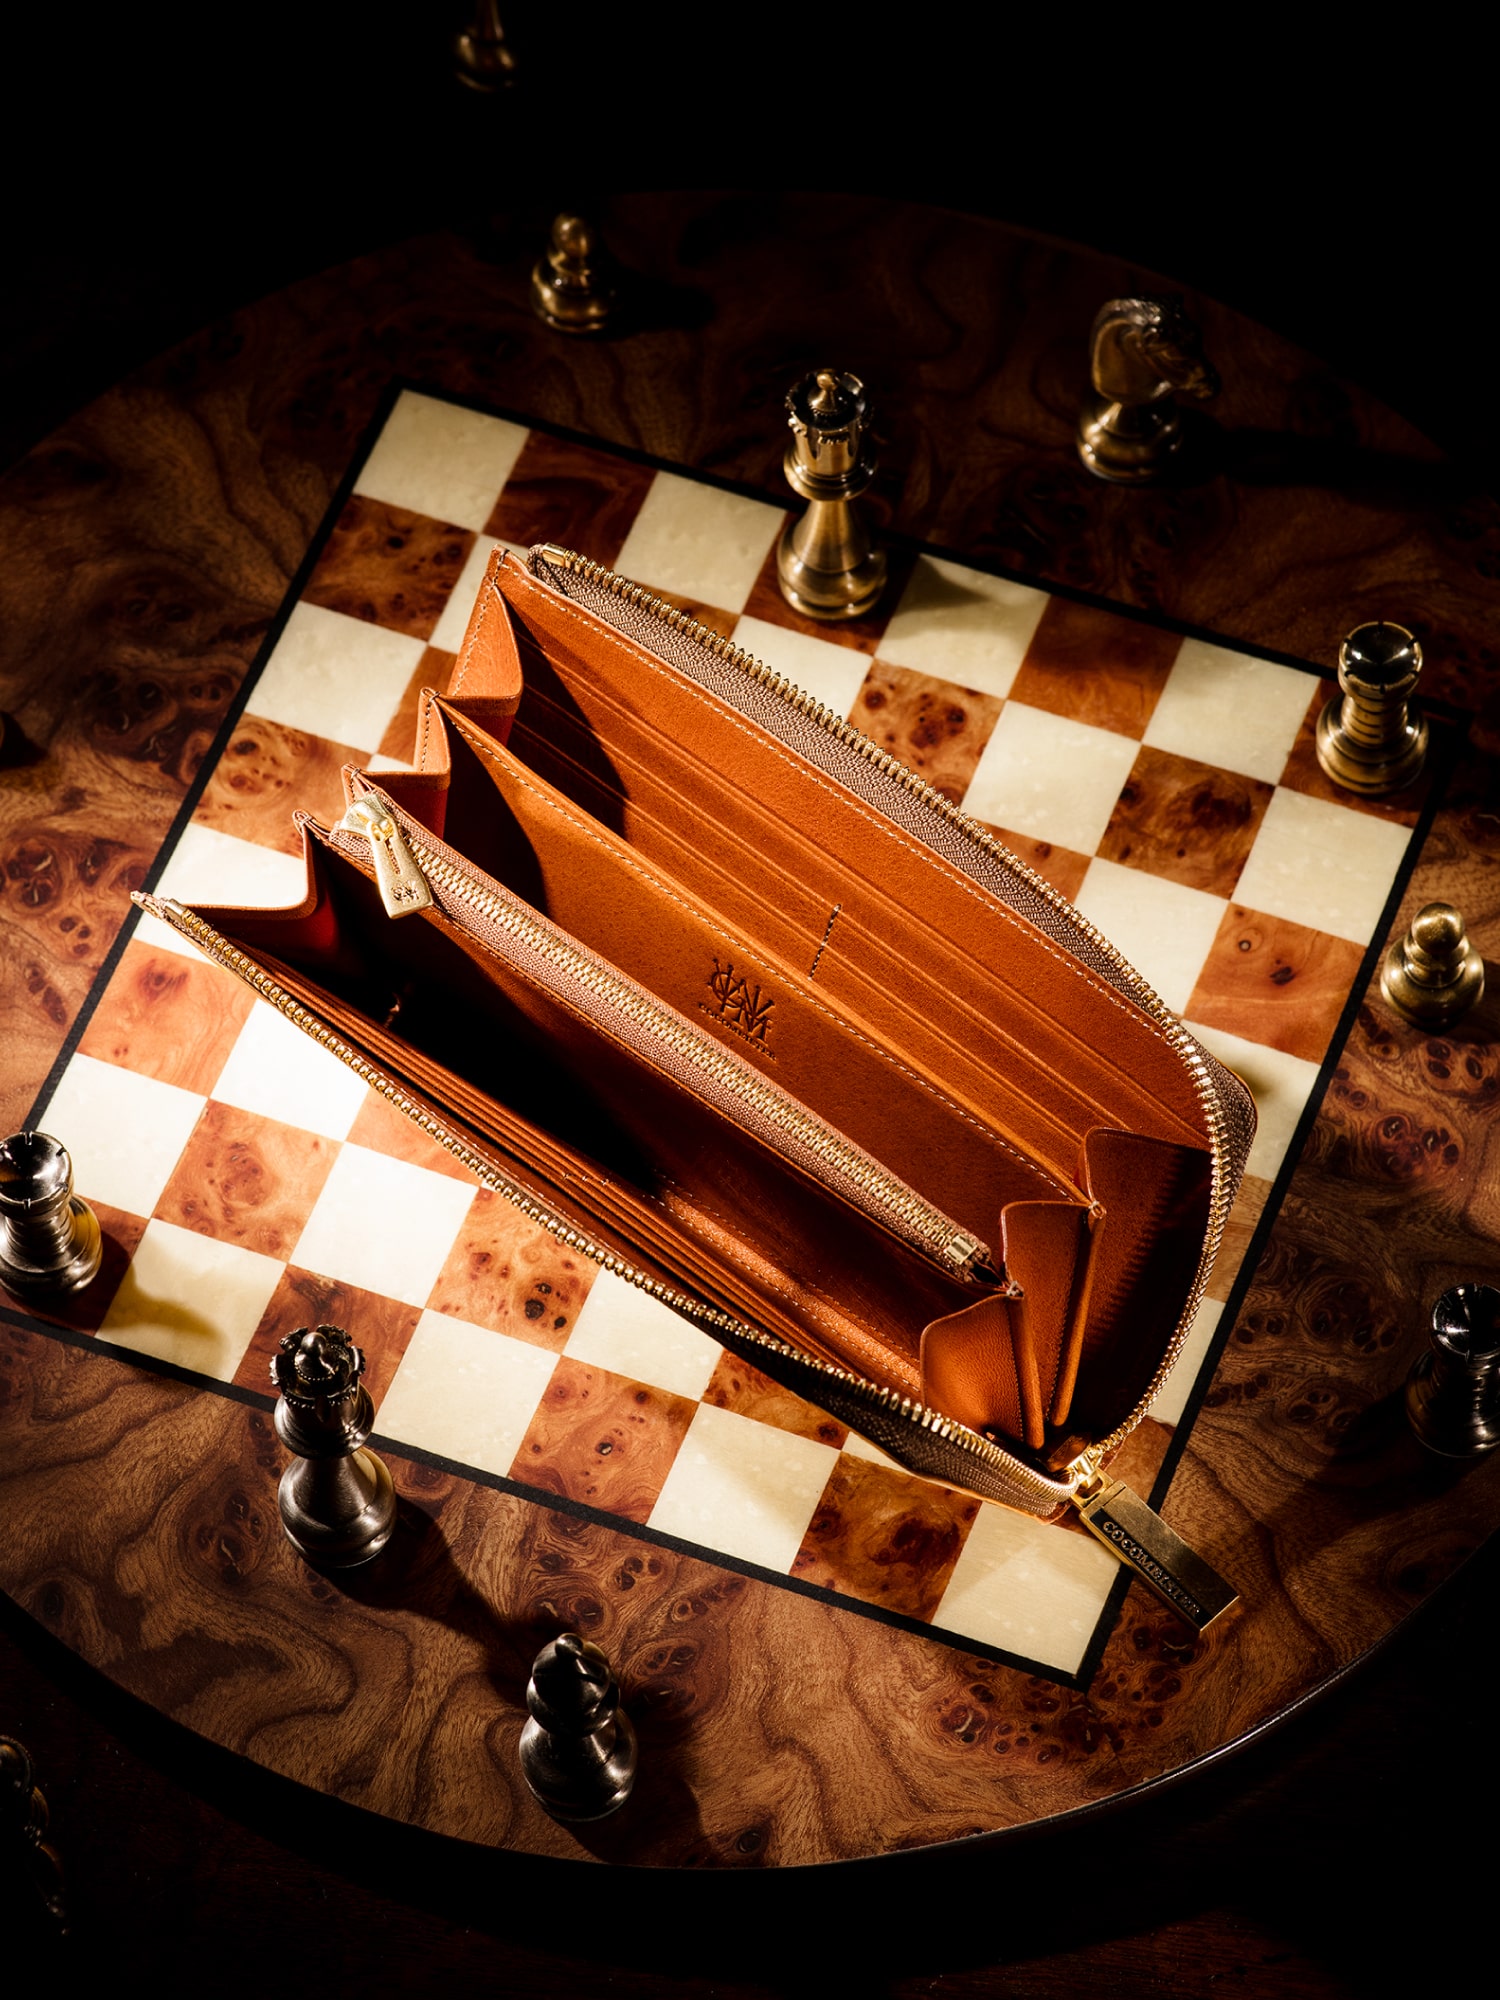 チェスボード クイーン | ココマイスター公式サイト